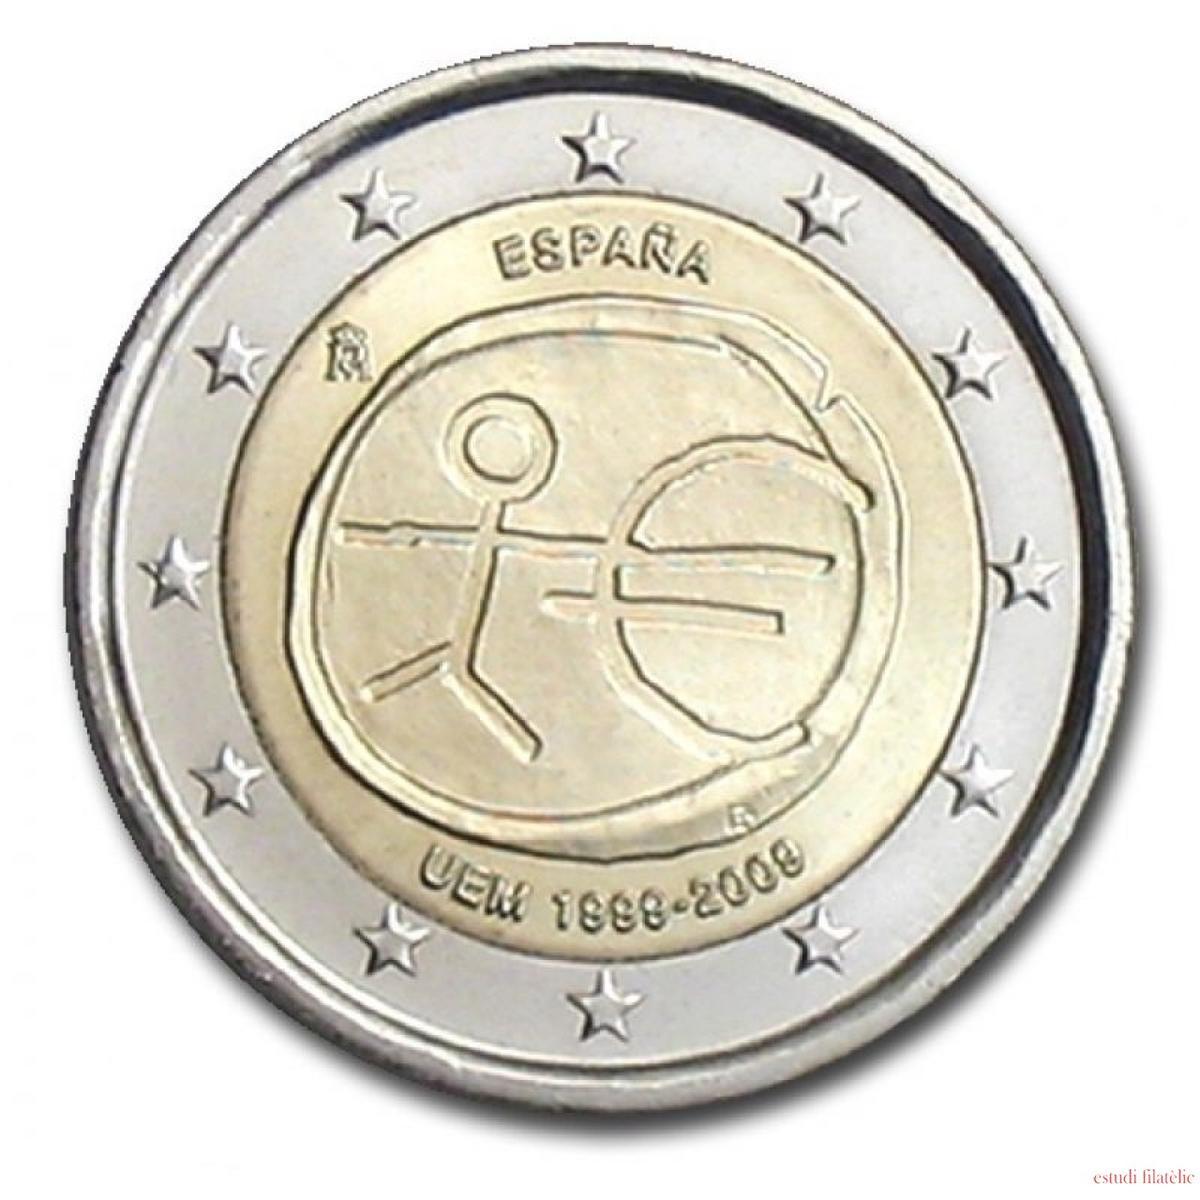 La moneda de 2 euros conmemorativa del año 2009 de la Unión Económica y Monetaria